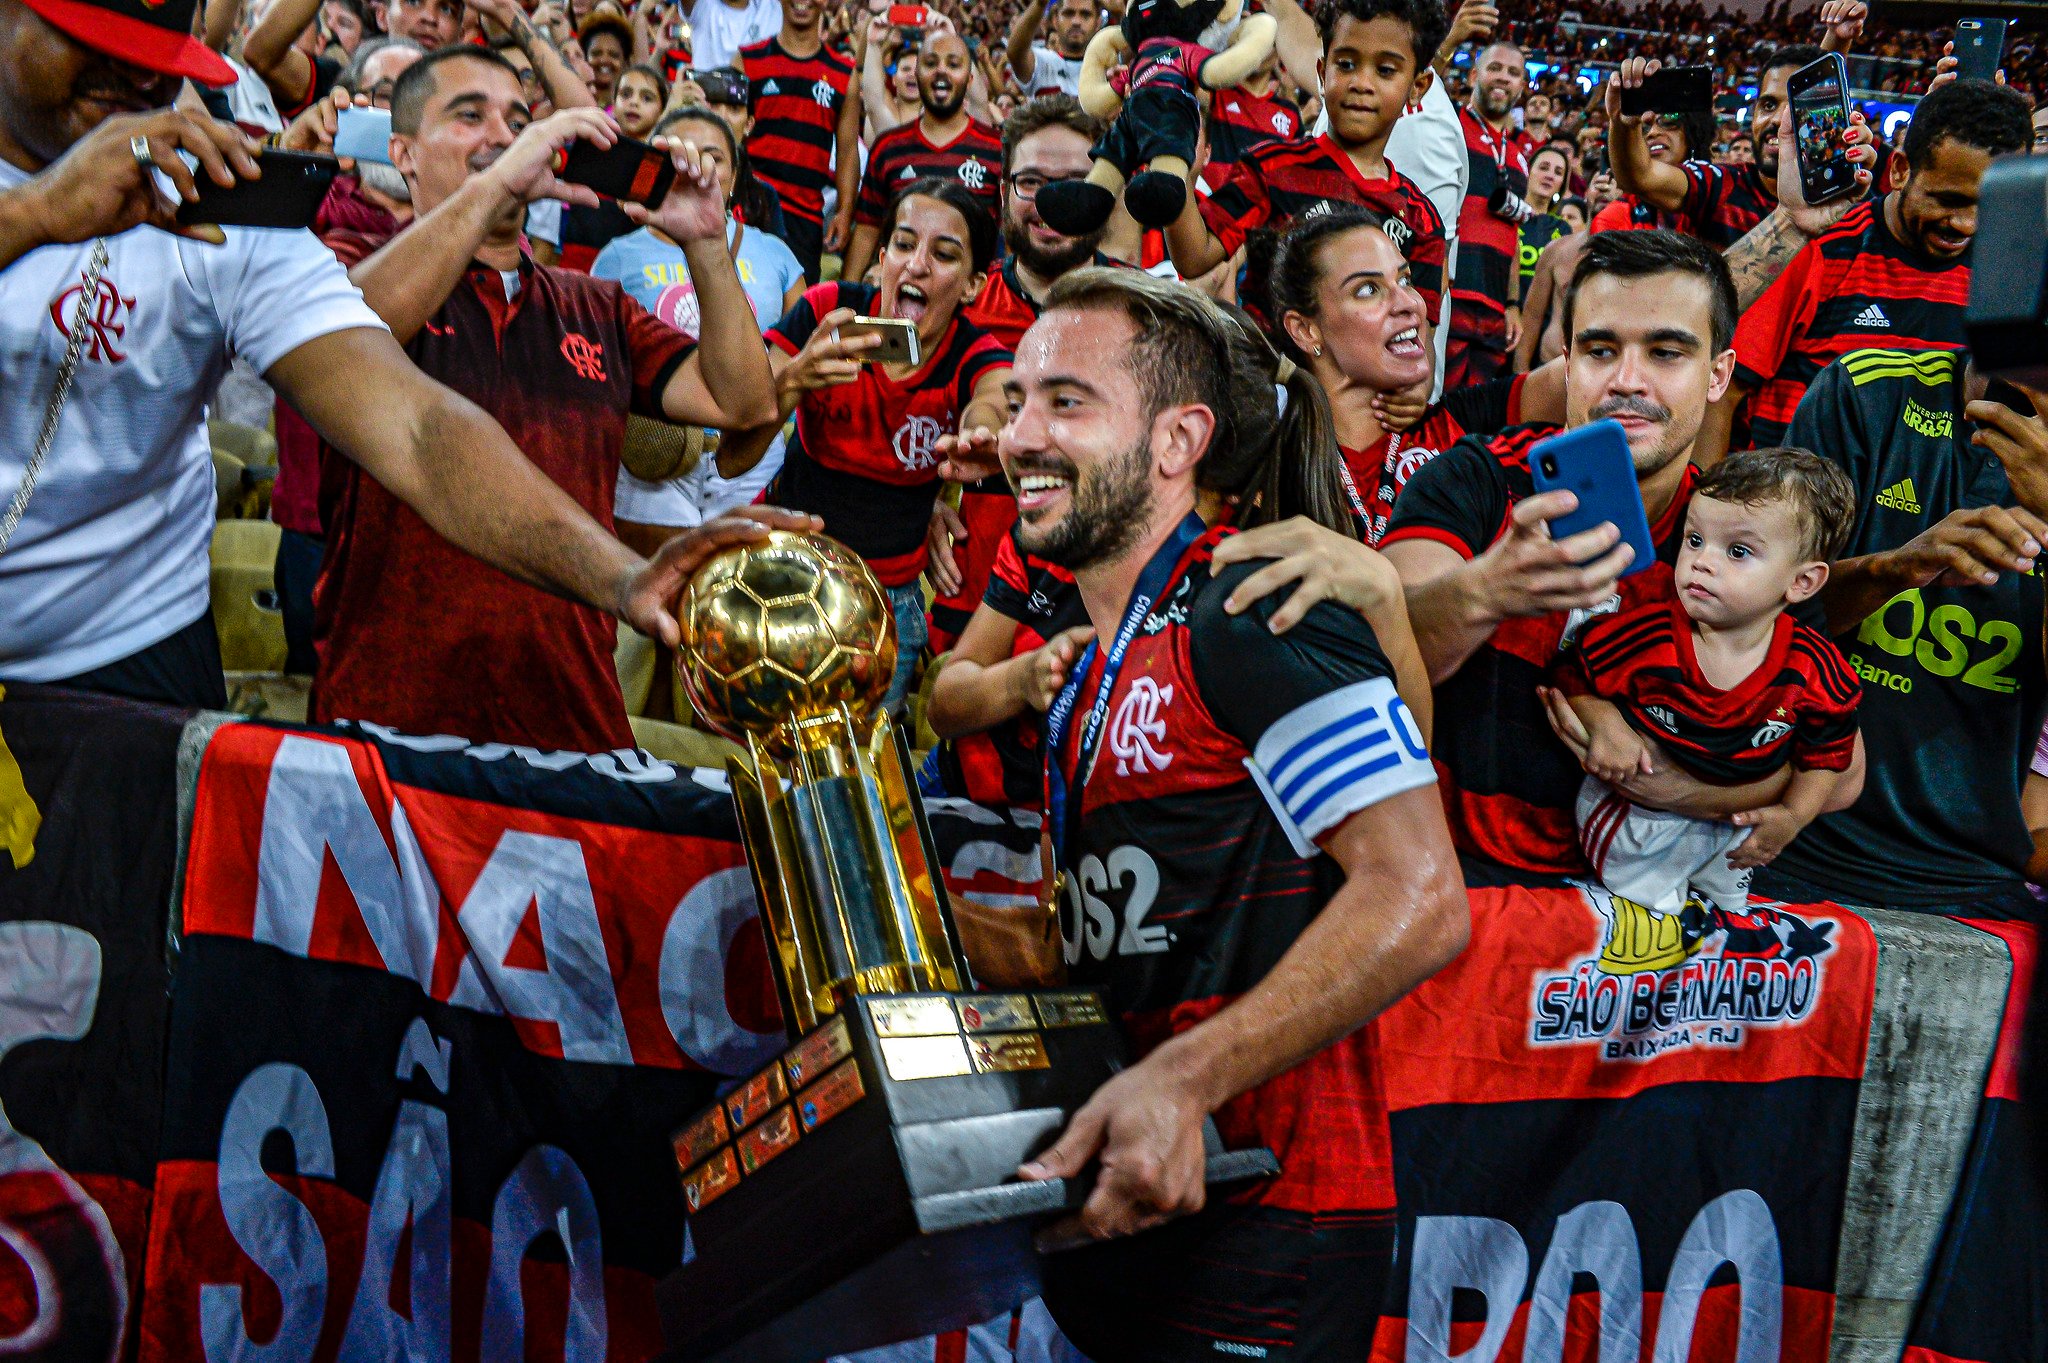 6º - Com a vitória de ontem, o Flamengo chegou ao sexto título internacional (1 Mundial, 2 Libertadores, 1 Copa Mercosul, 1 Recopa Sul-americana e 1 Copa Ouro).